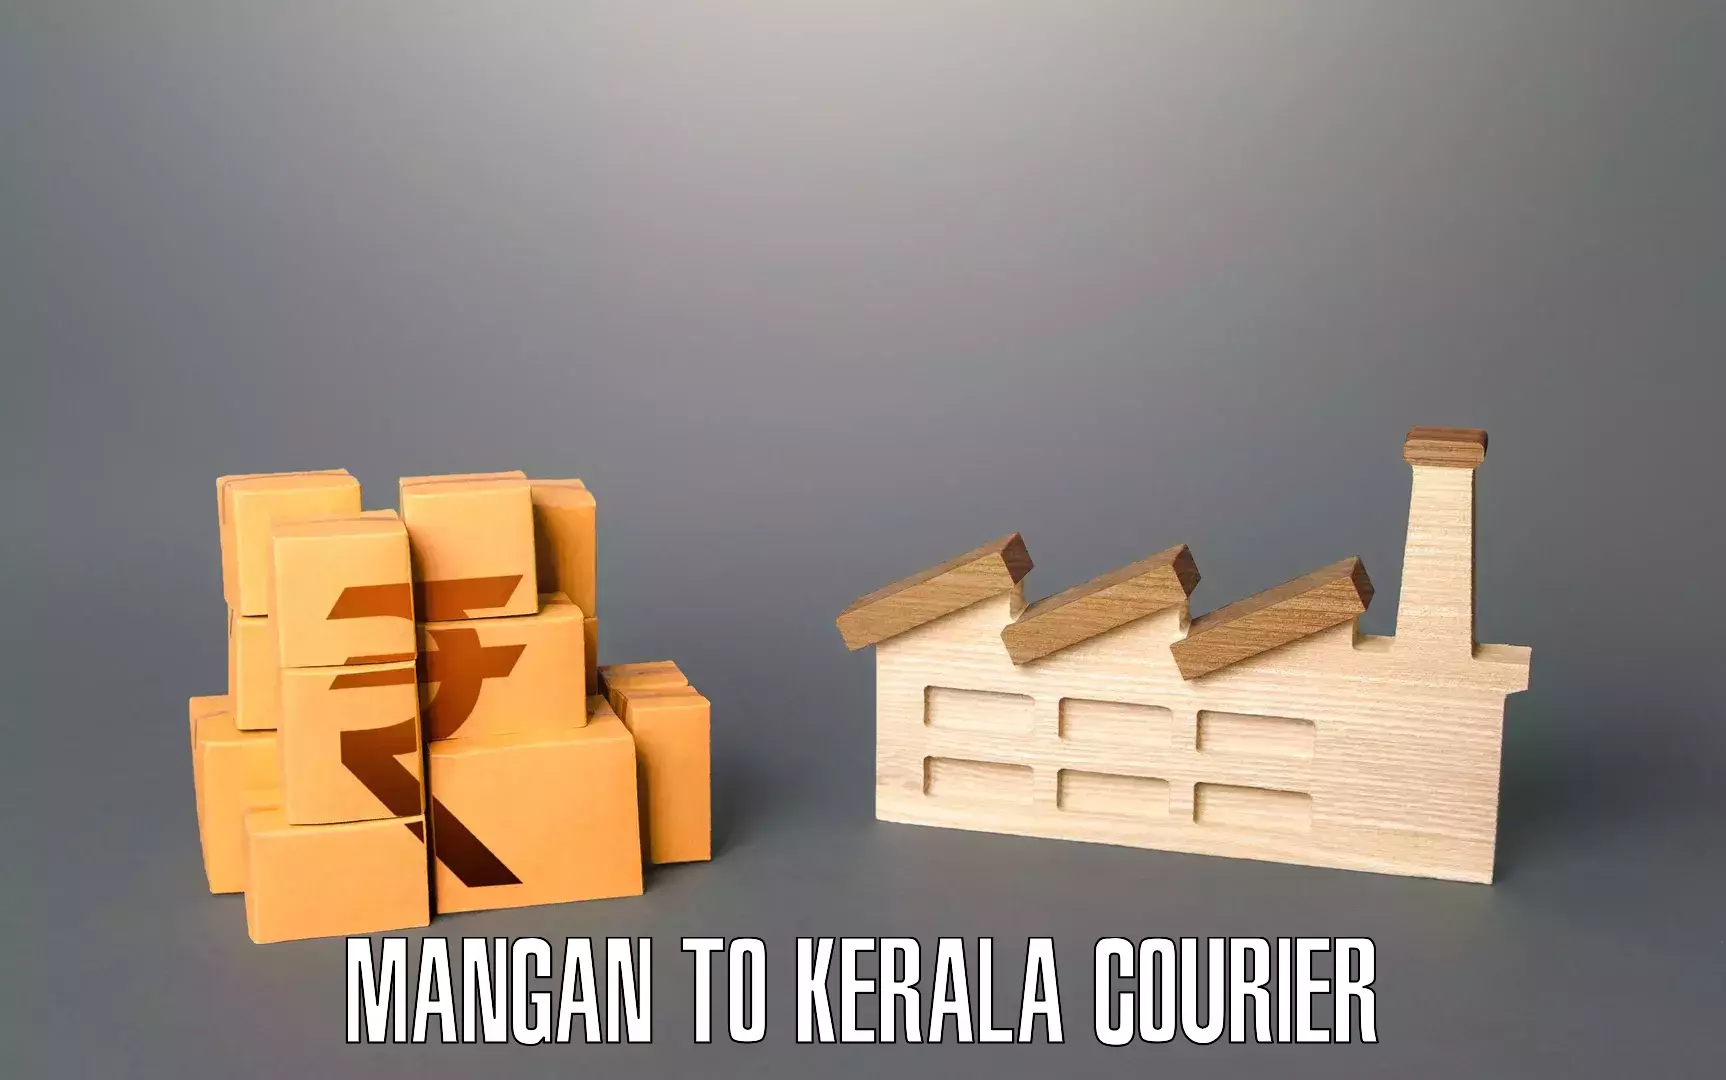 Residential moving experts Mangan to Kerala